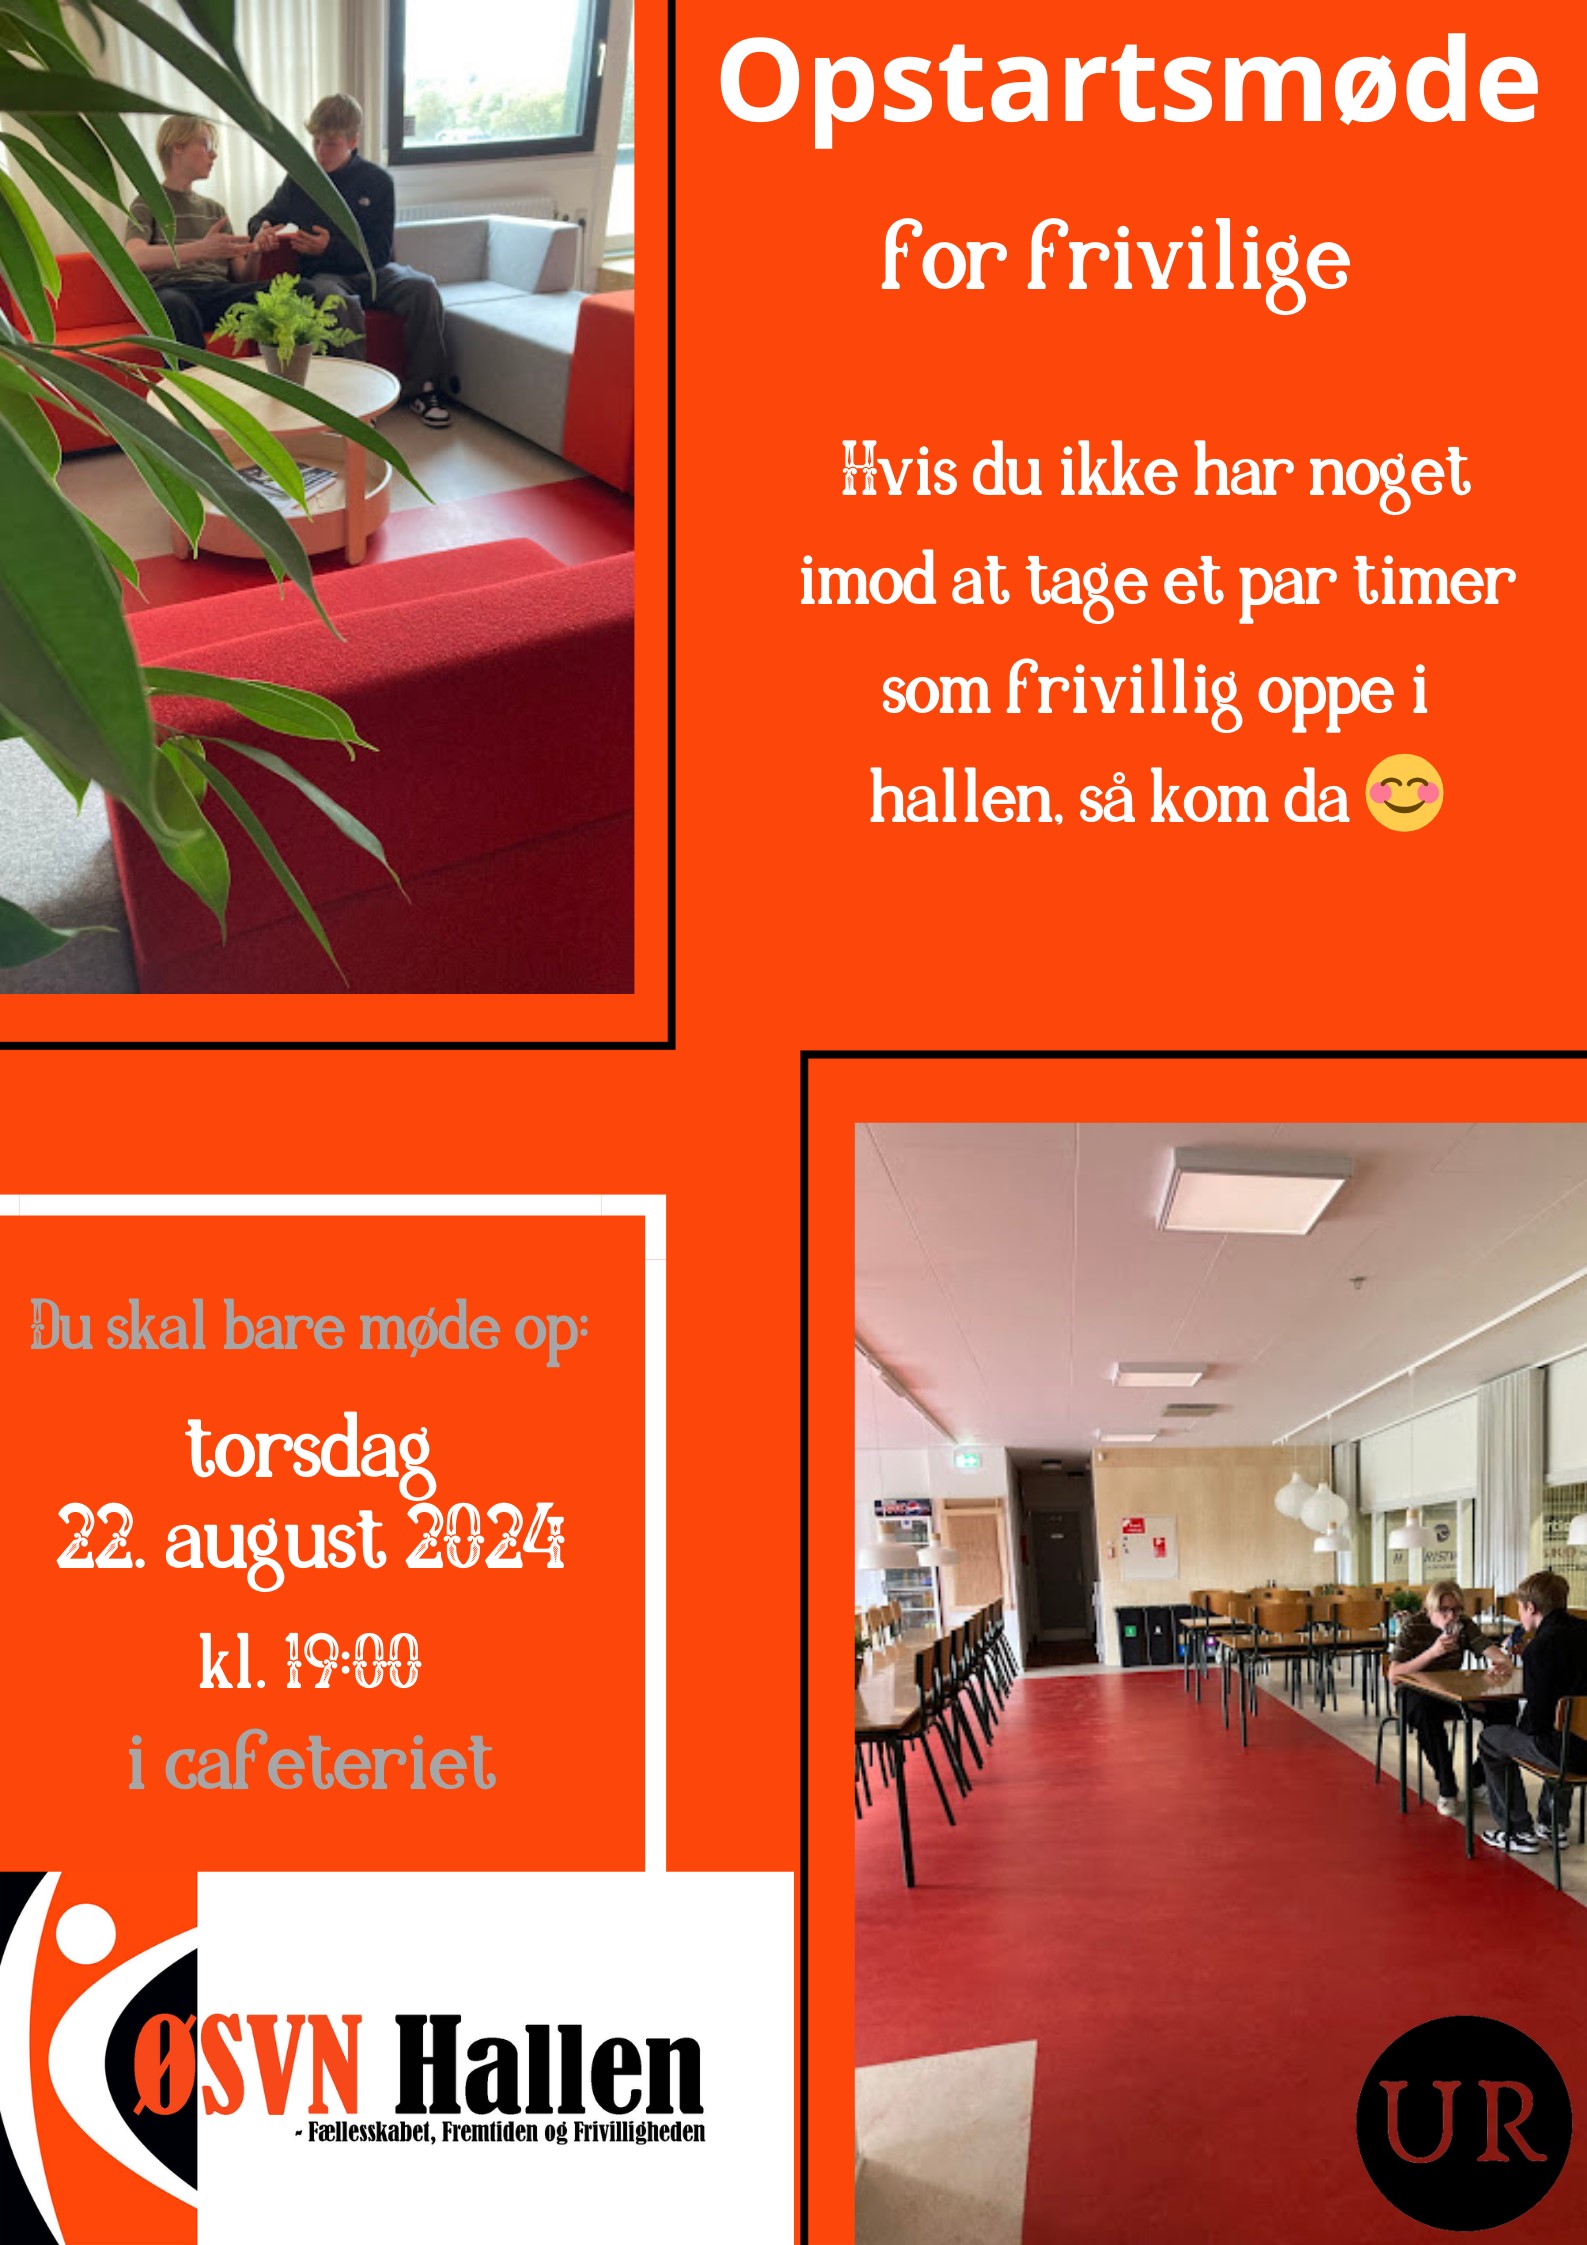 Opstartsmøde for frivillige ØSVN Café, opdateret maj 2024